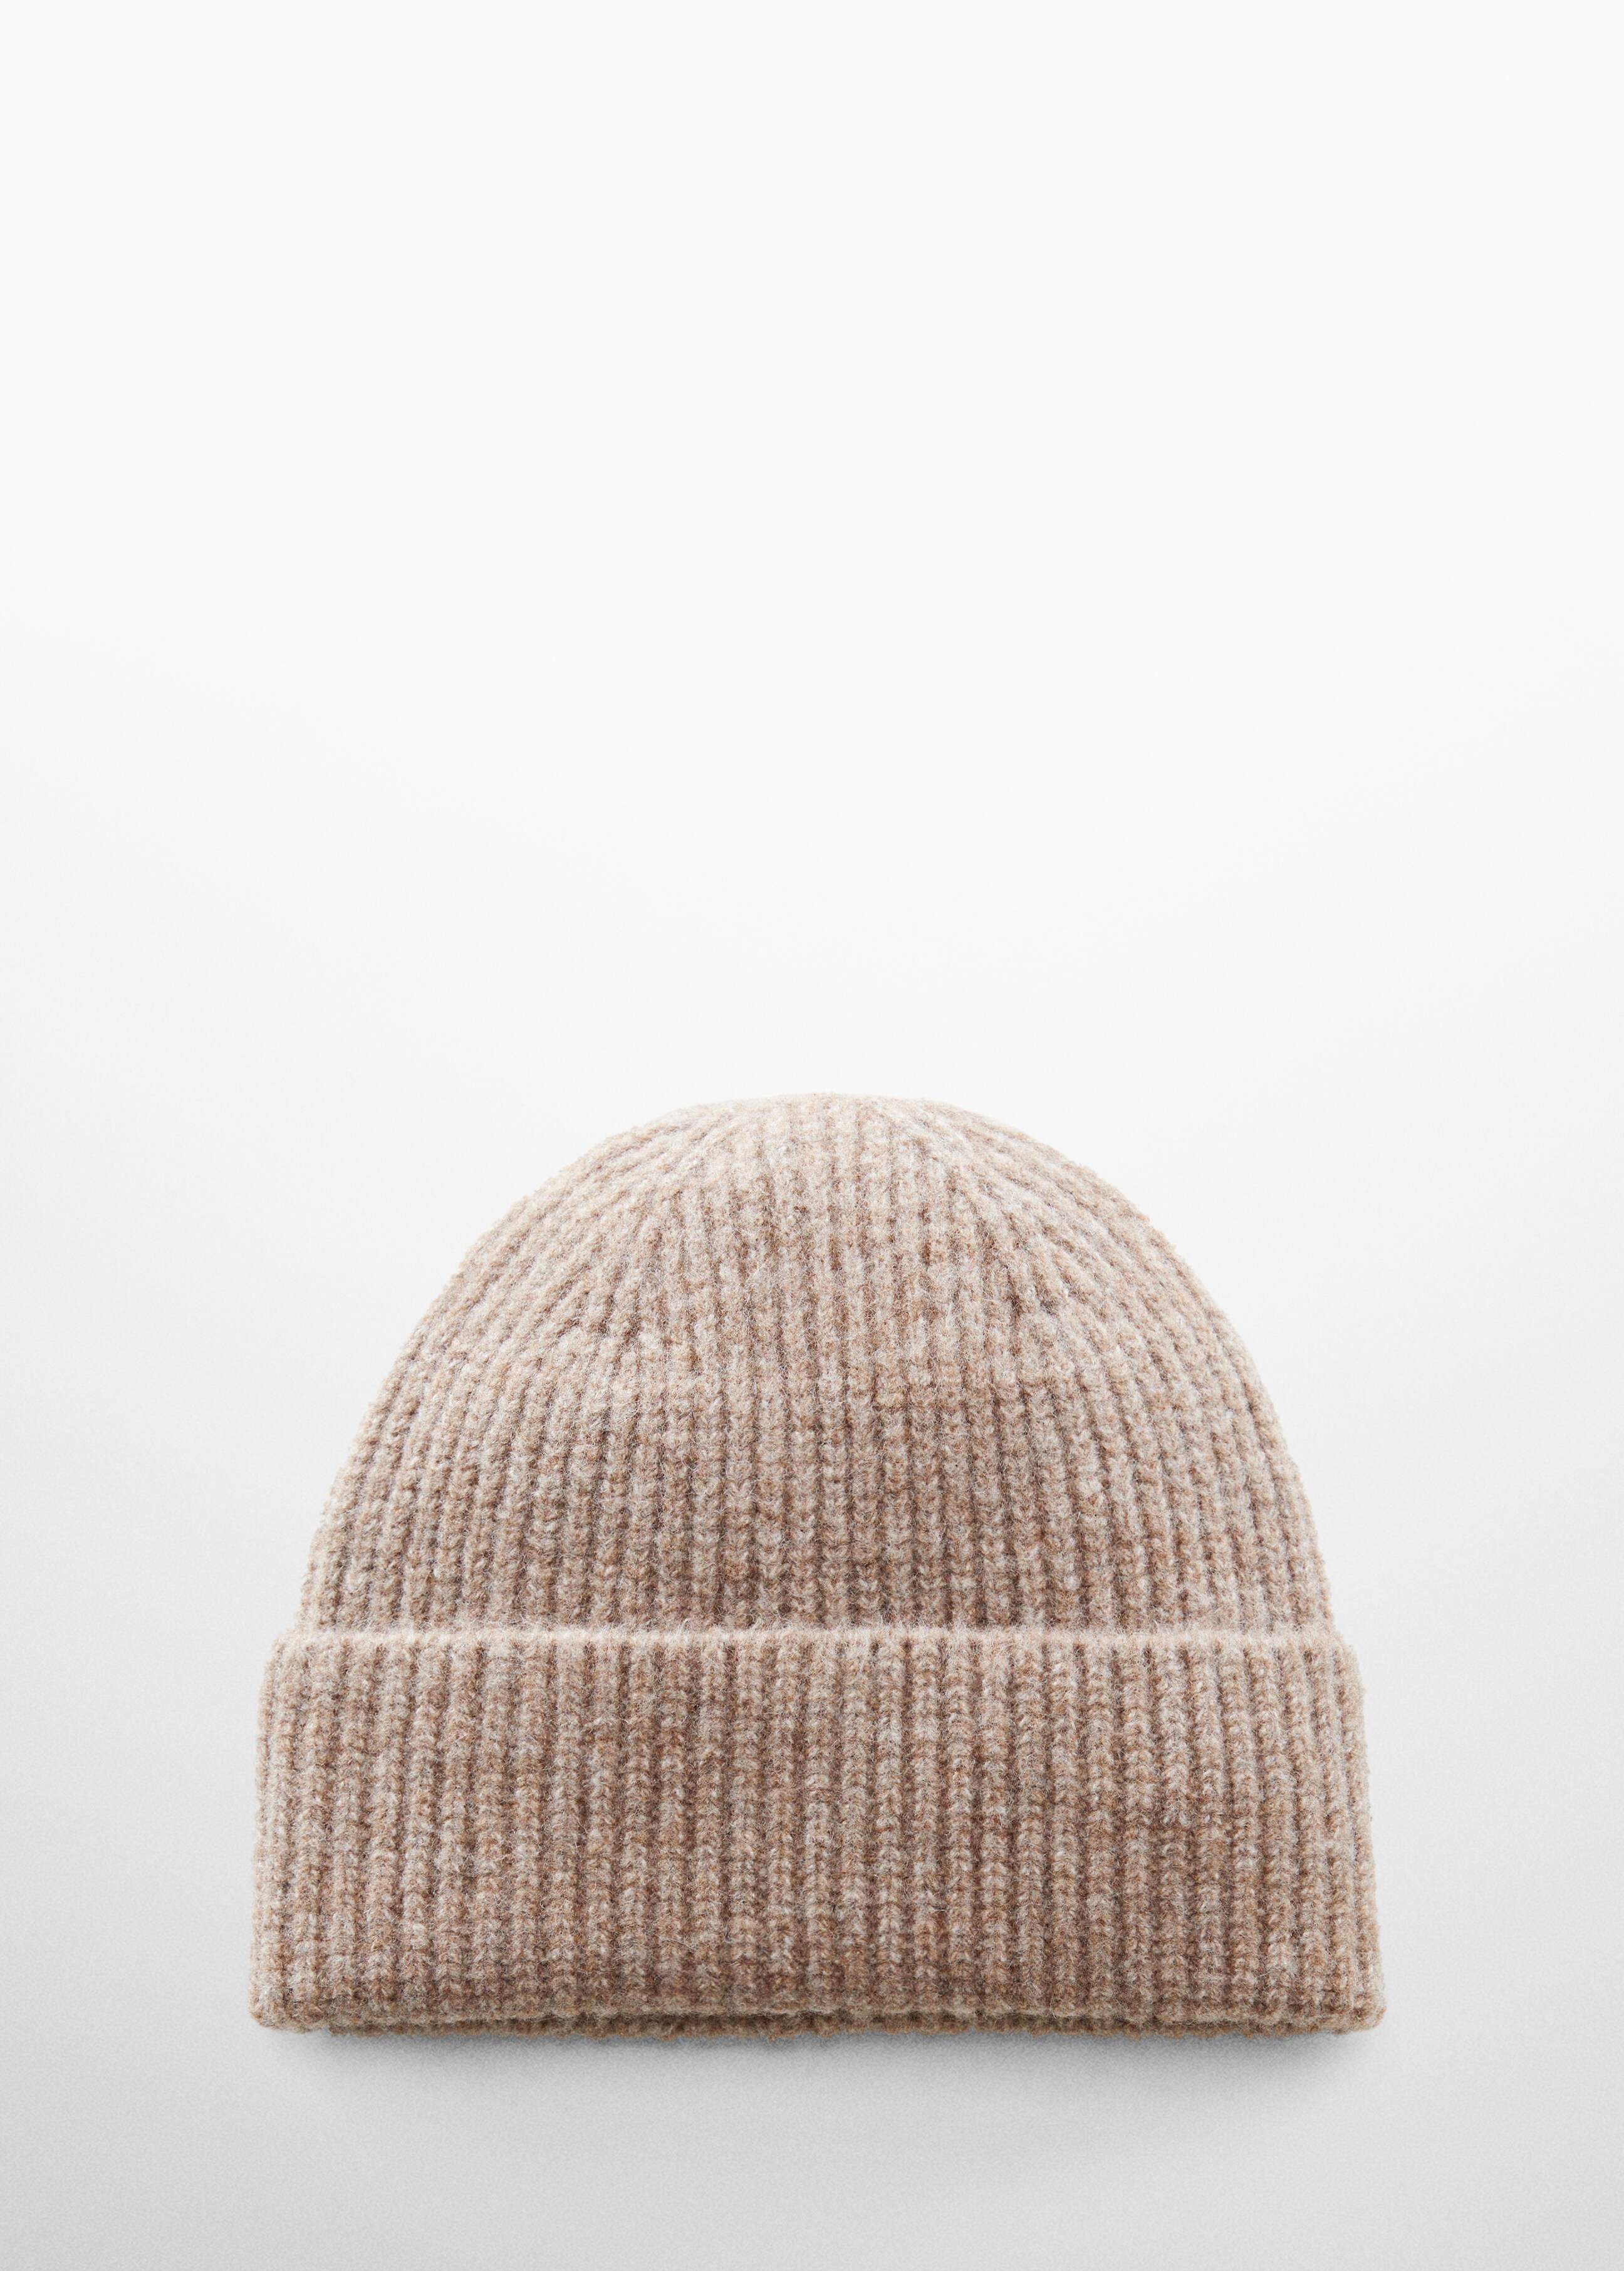 Cappello maglia - Articolo senza modello